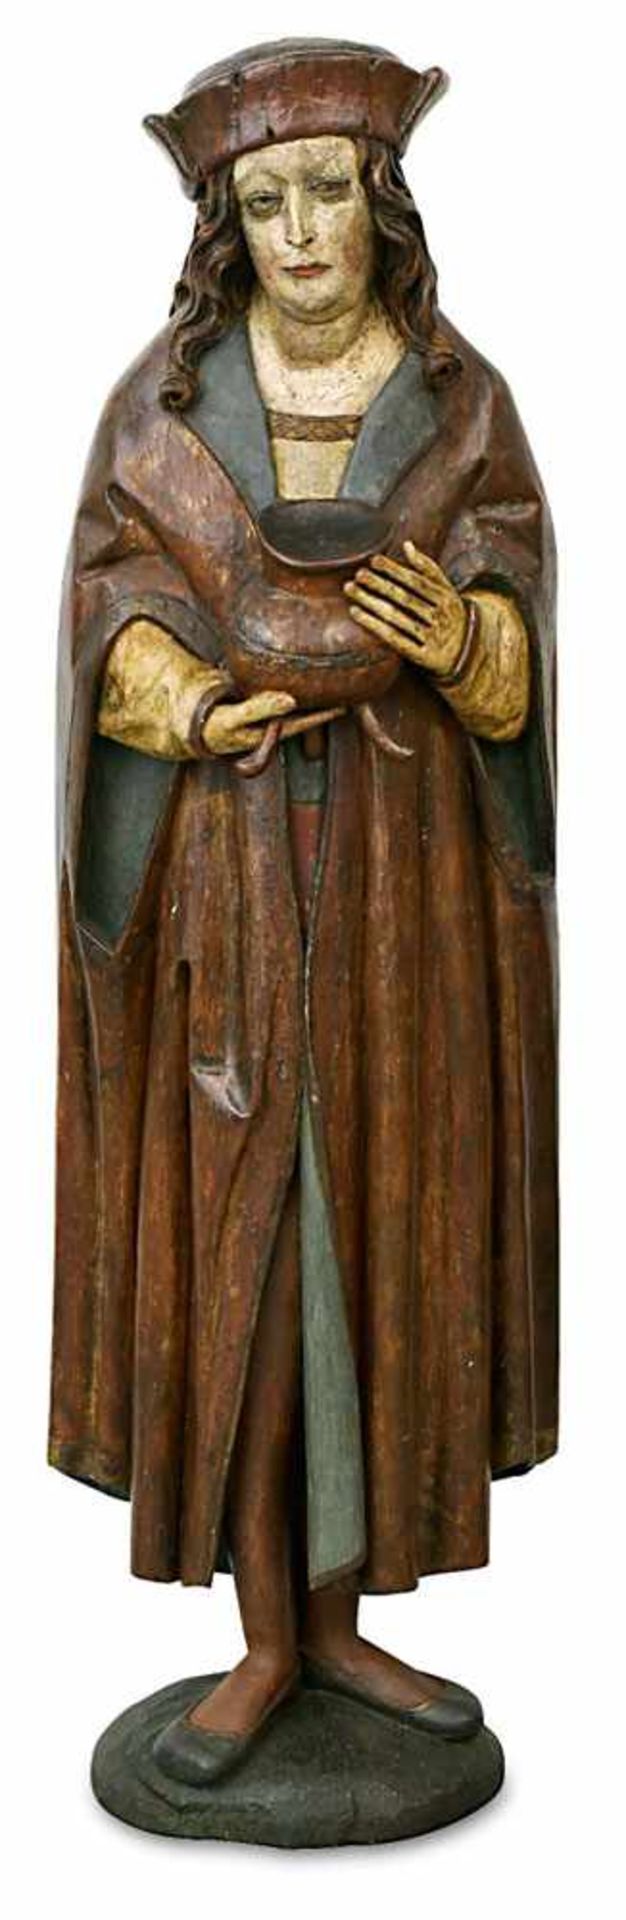 Hl. Vitus Süddeutsch, um 1510 Holz, geschnitzt, rückseitig gehöhlt. Farbfassung (später).